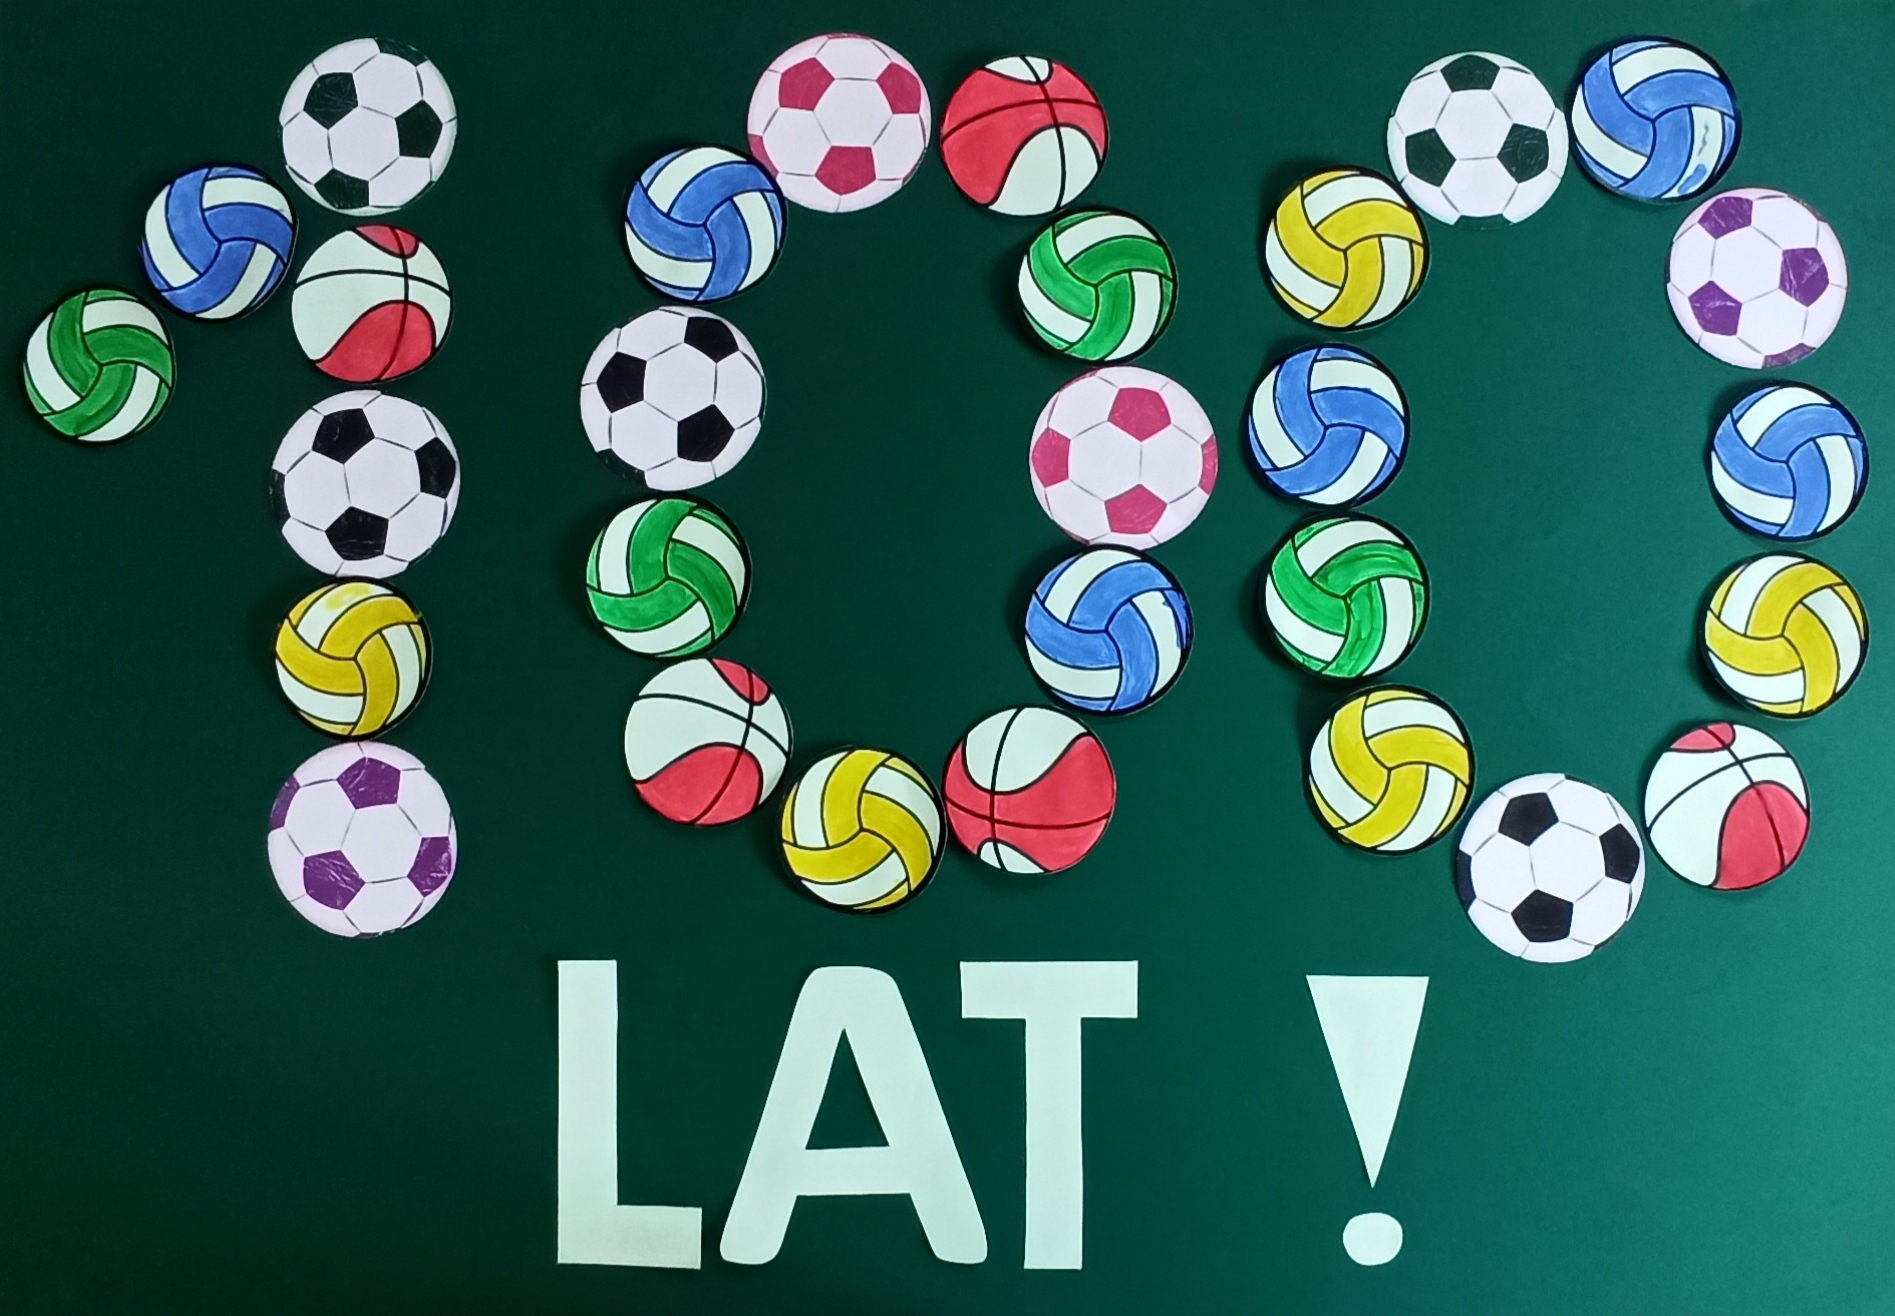 Napis "100 LAT" ułożony na dużym arkuszu zielonego brystolu z kolorowych pomalowanych farbami papierowych piłek do koszykówki, siatkówki i nogi.